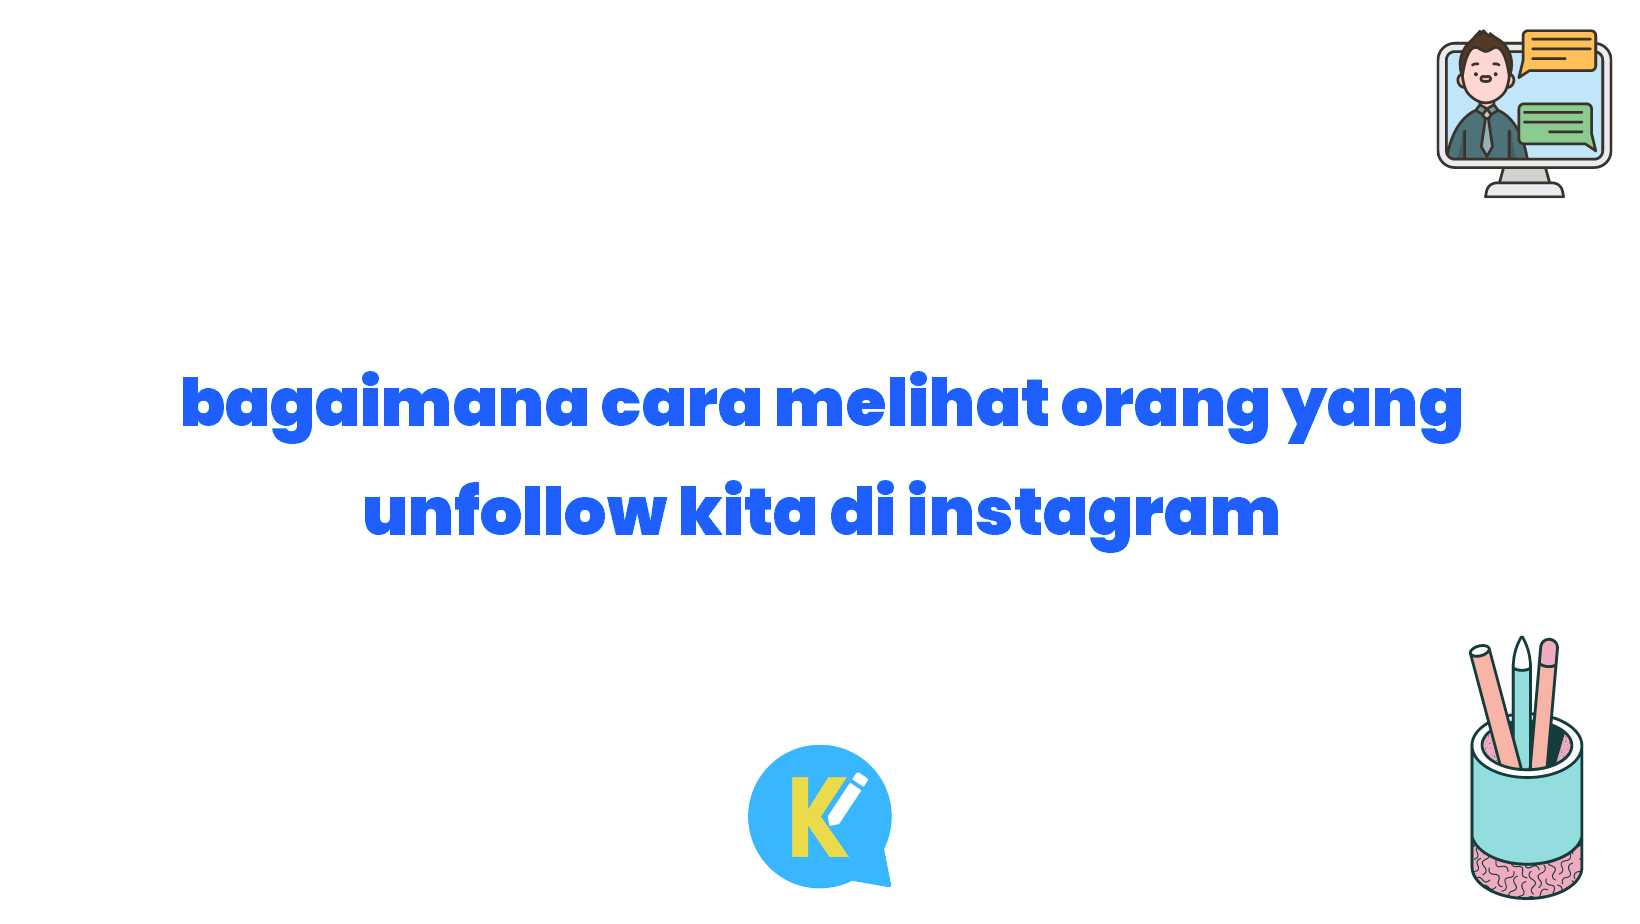 bagaimana cara melihat orang yang unfollow kita di instagram